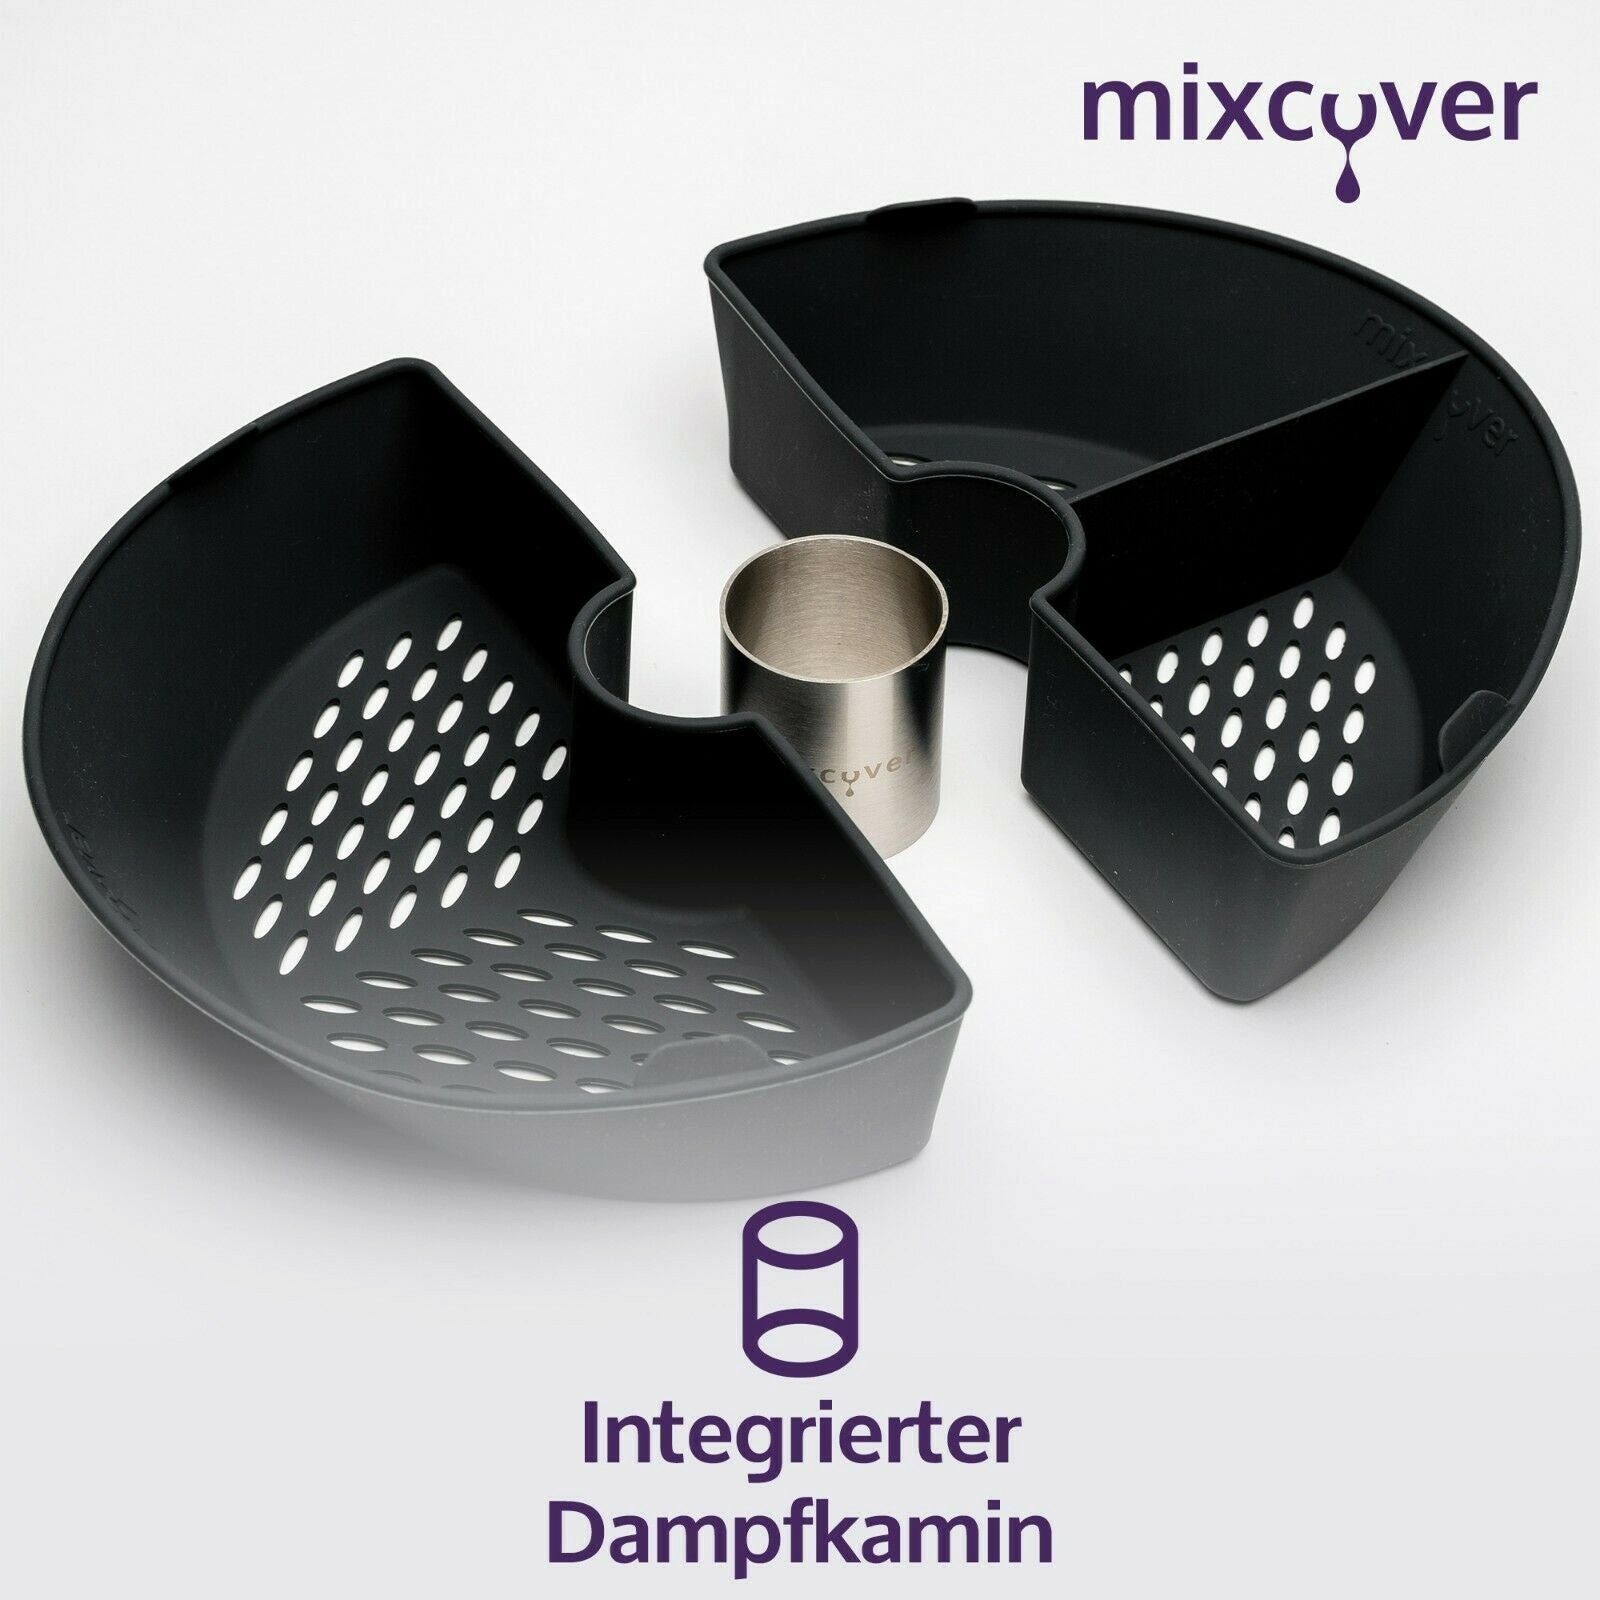 Bosch (HALB) mixcover Cookit Küchenmaschinen-Adapter Garraumteiler Dampfgarraum Mixcover für